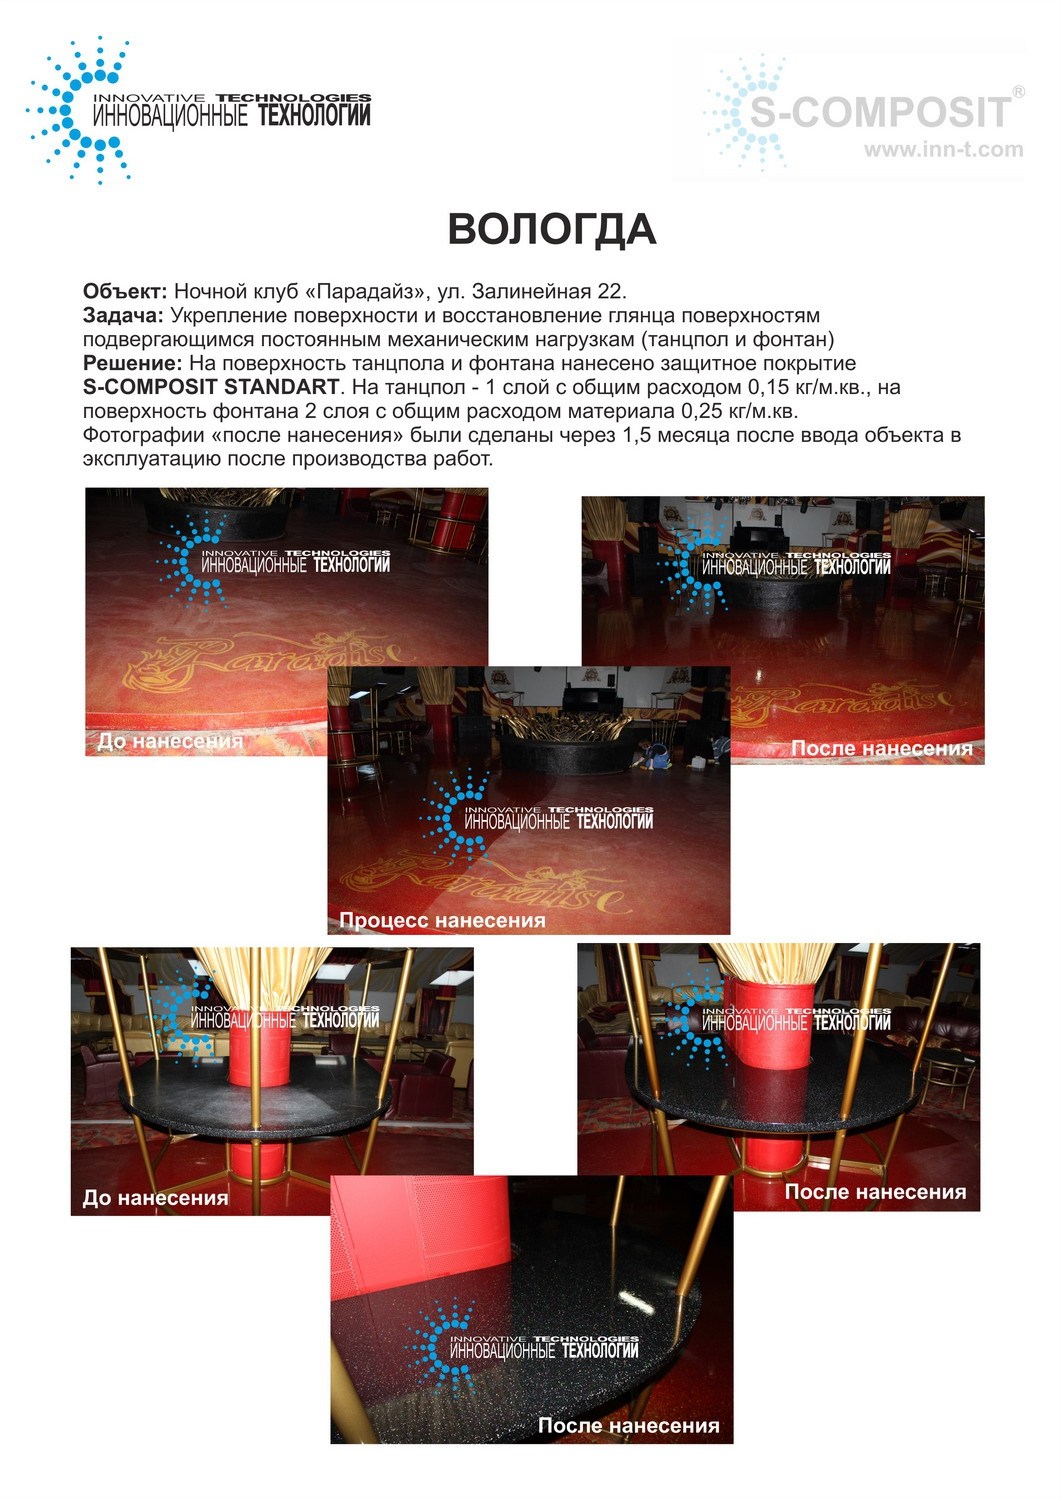 Реконструкция напольного покрытия в ночном клубе Парадайз, город Вологда.